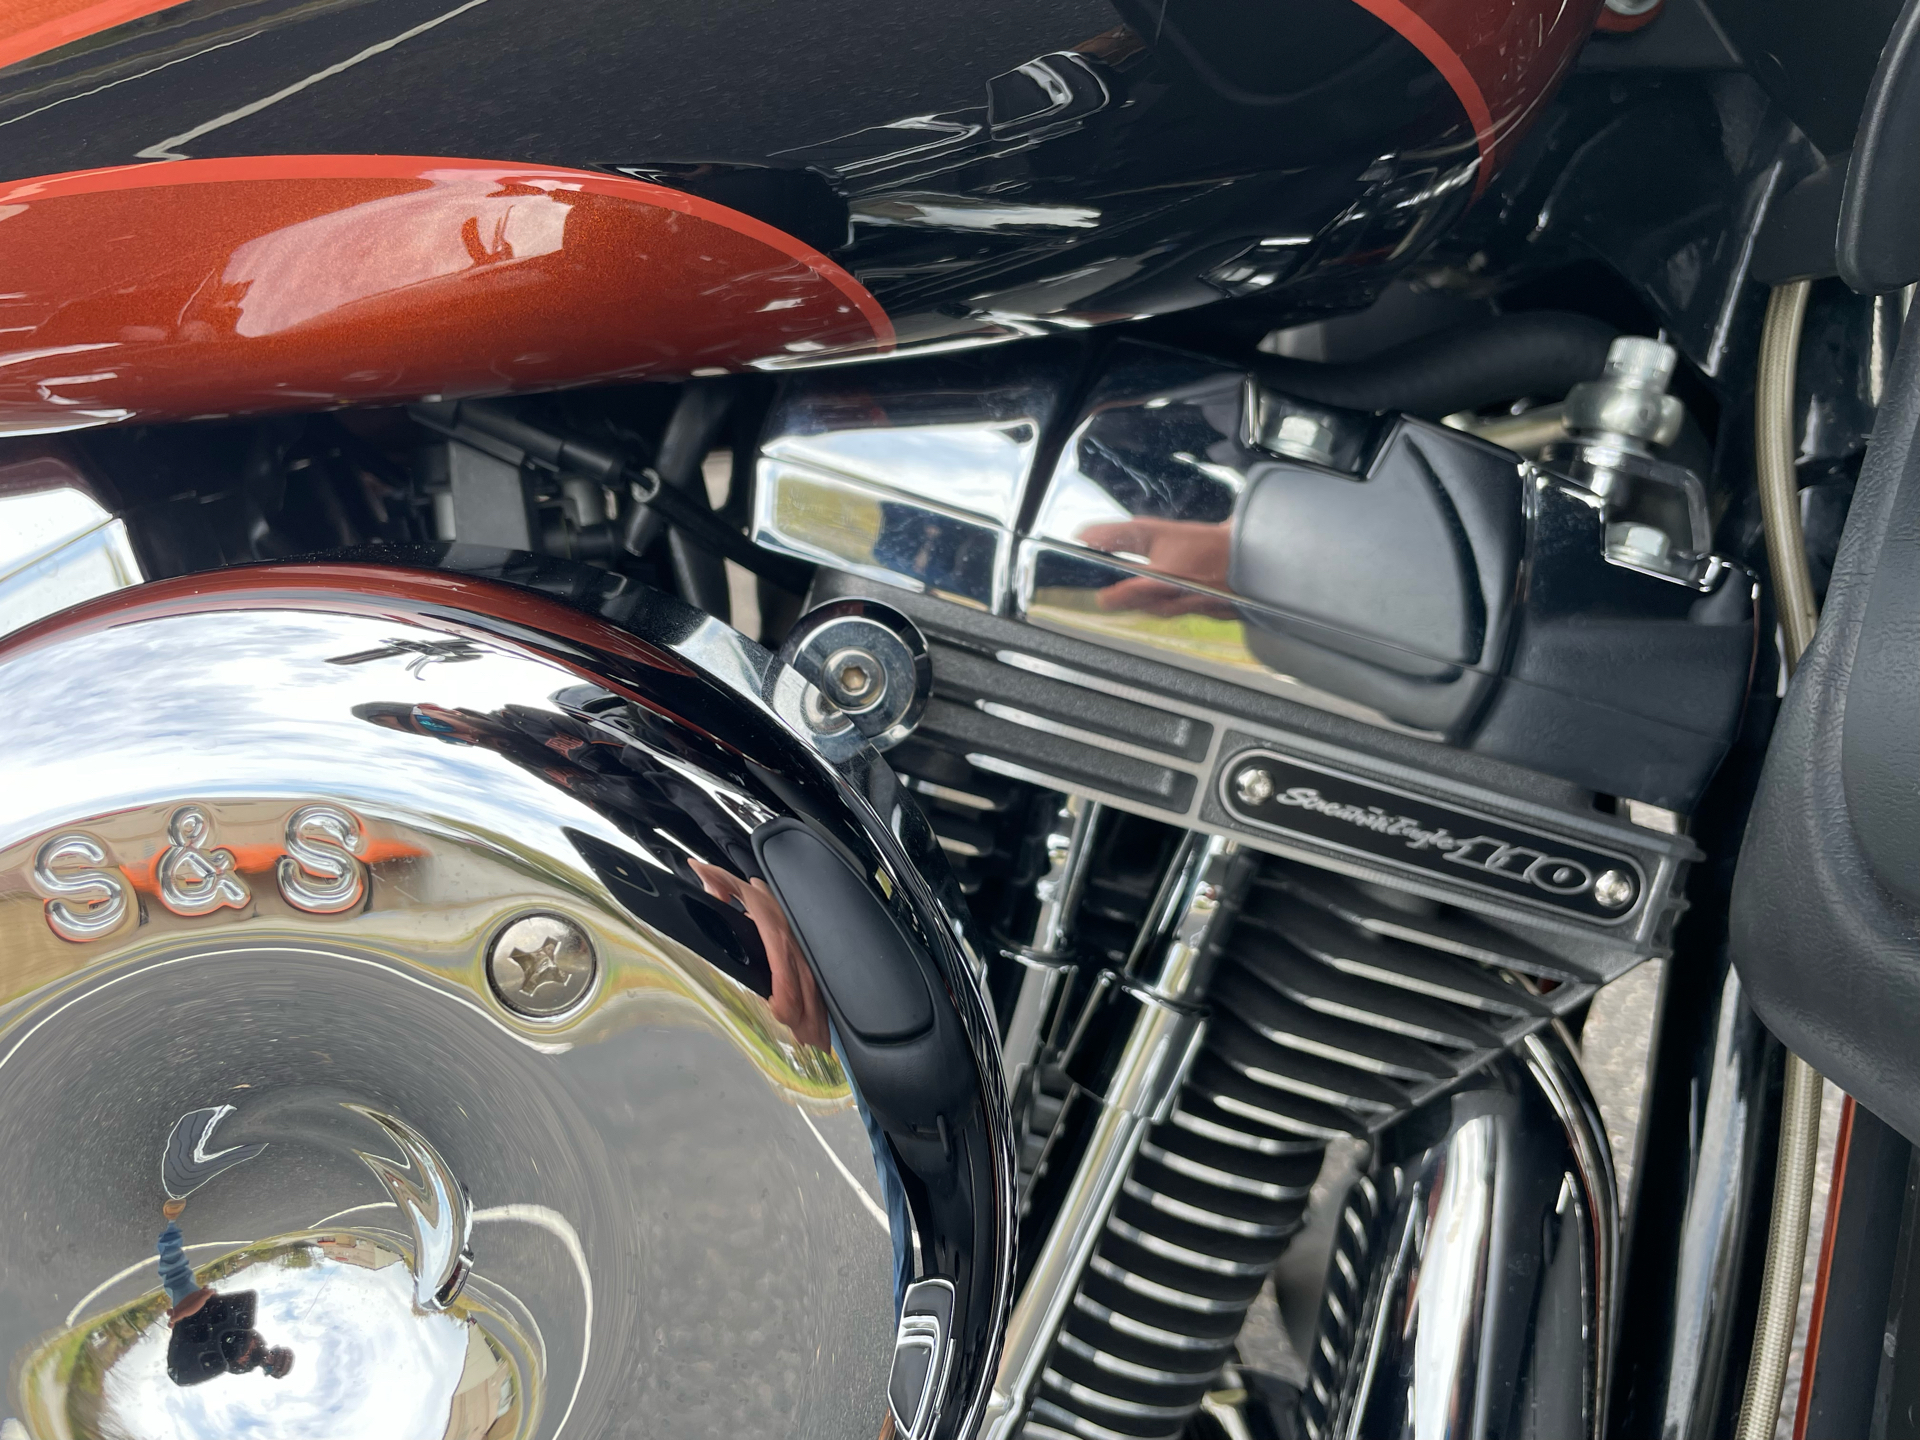 2015 Harley-Davidson CVO Road Glide Ultra in Roanoke, Virginia - Photo 11